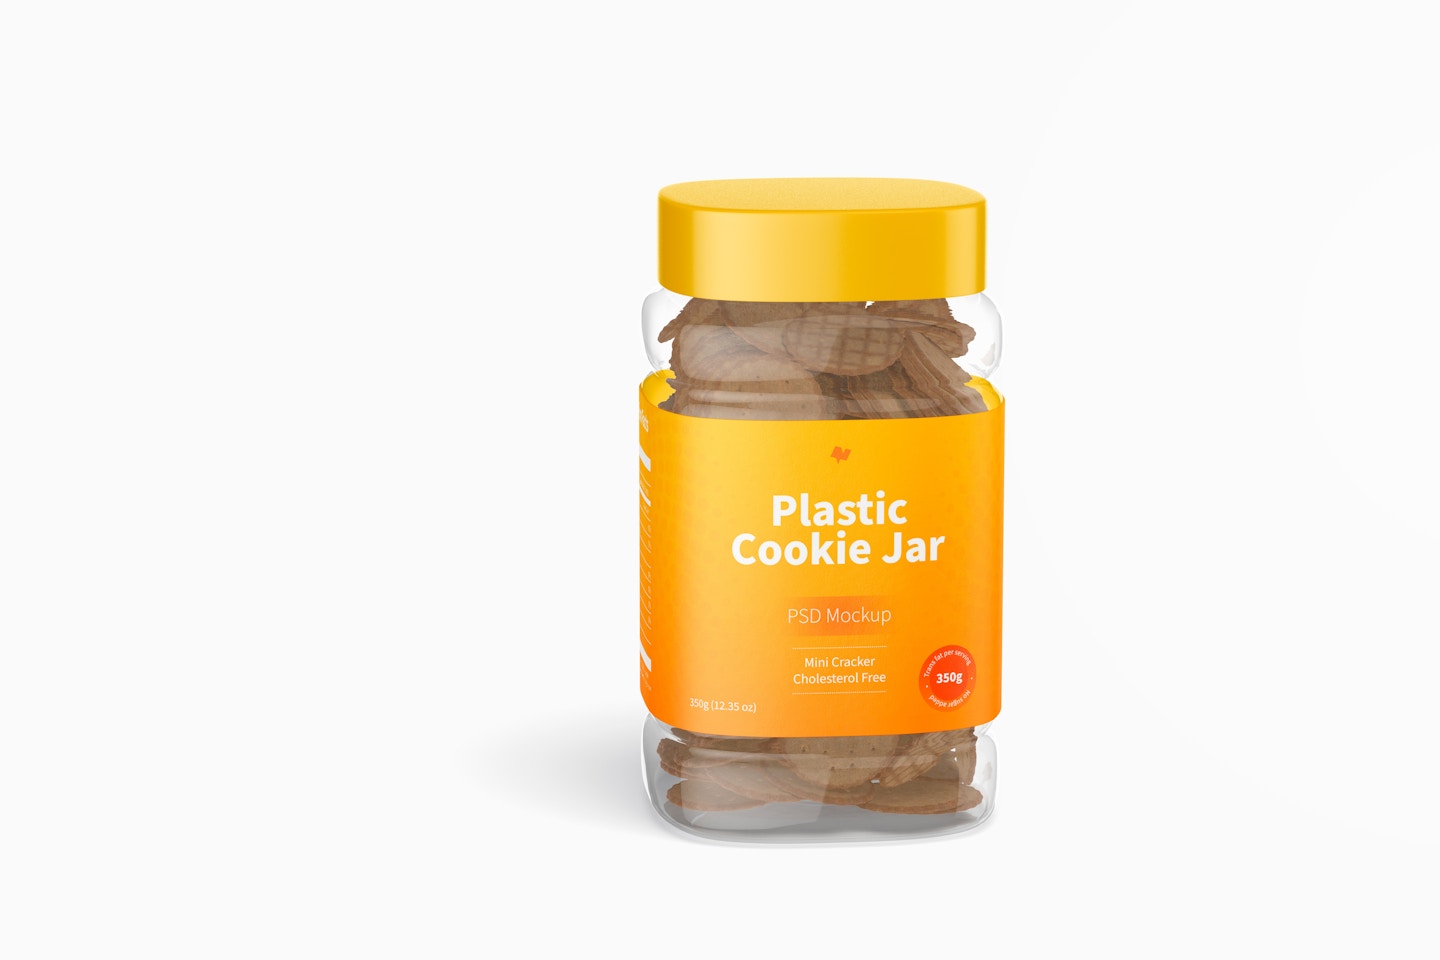 Plastic Cookie Jar Mockup